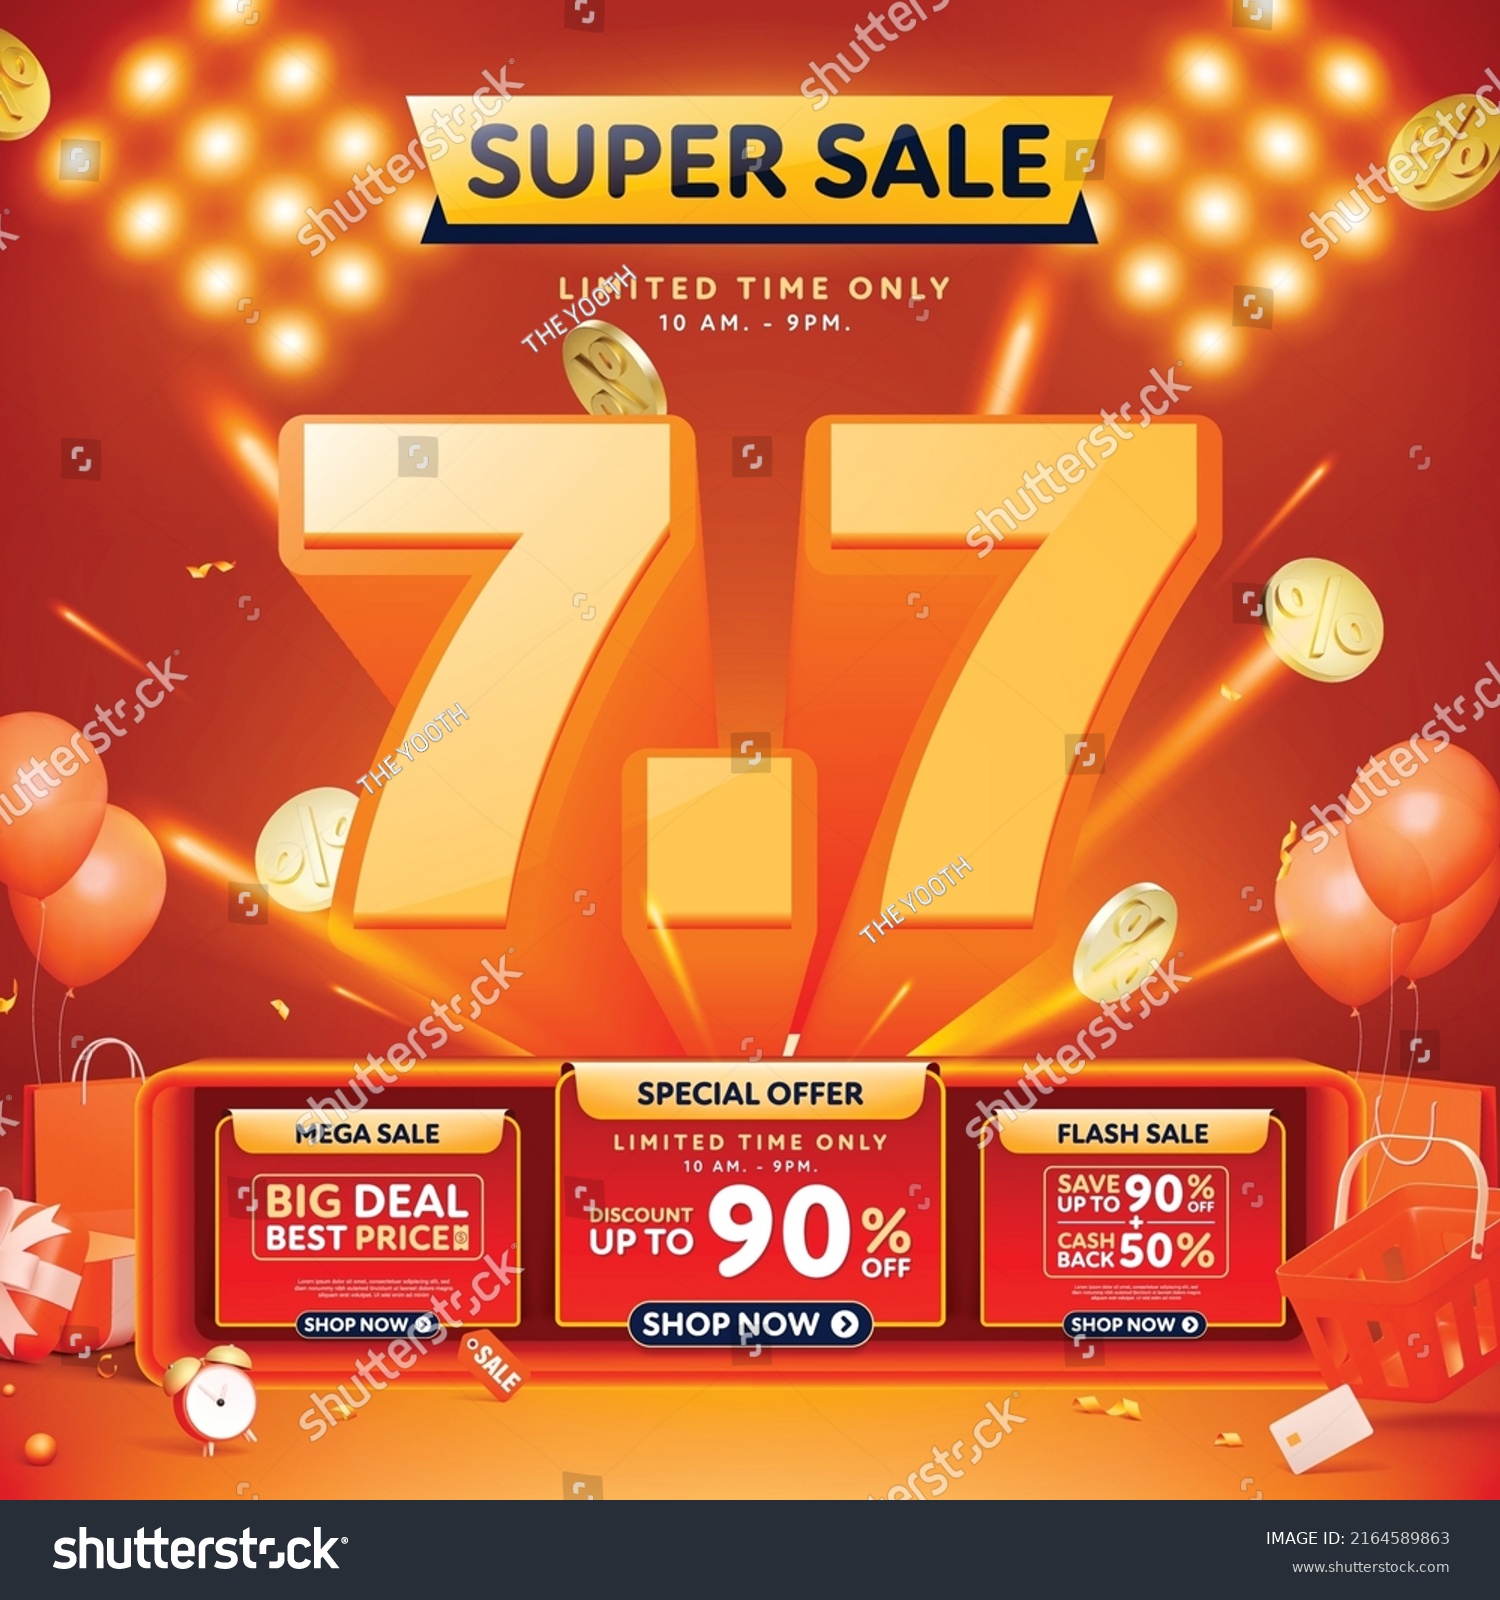 7.7 3D super sale banner template design for web or social media. #2164589863